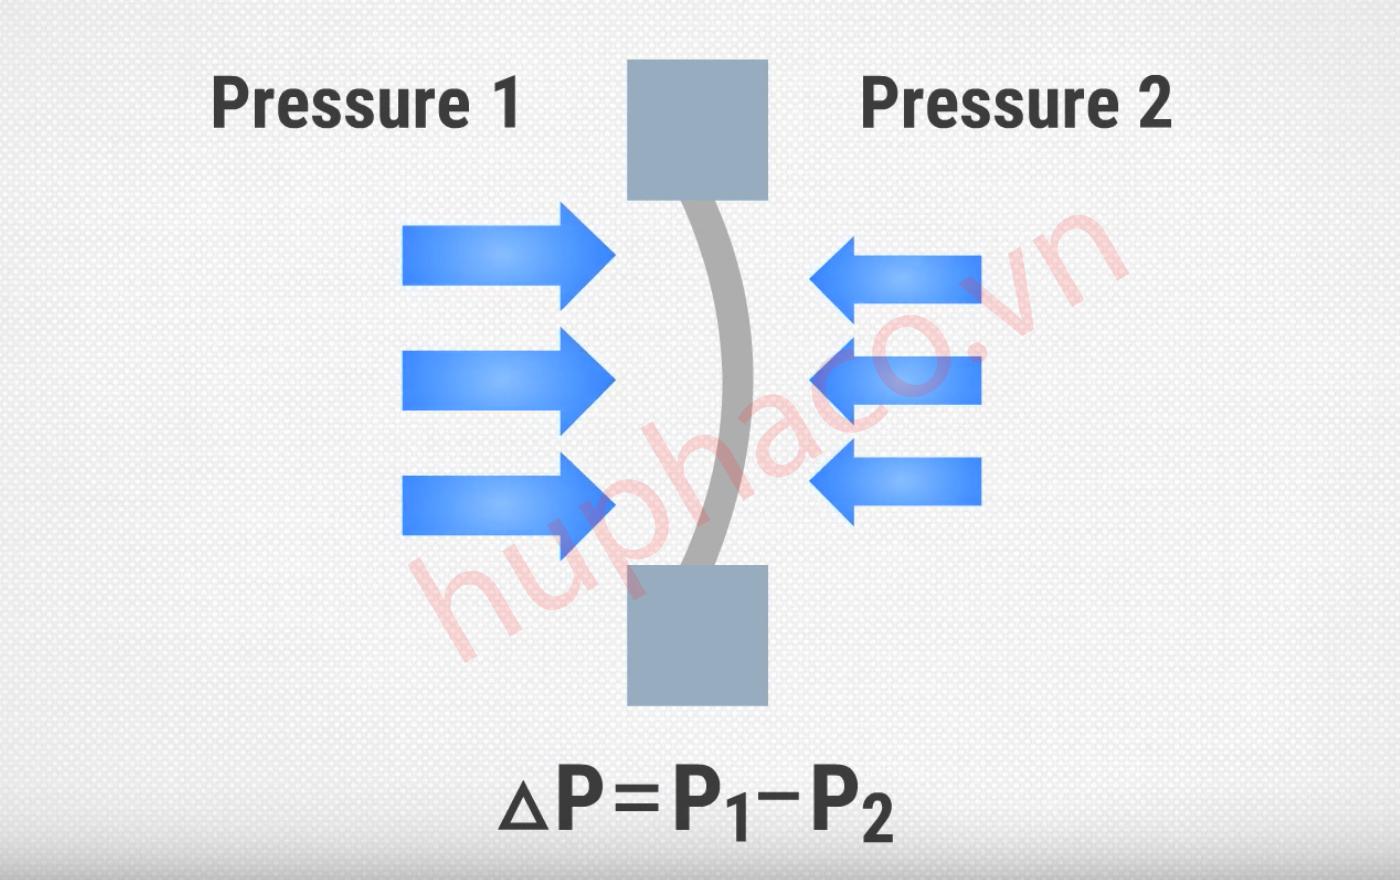 Áp suất chênh áp được dùng để đo sự chênh lệch áp suất